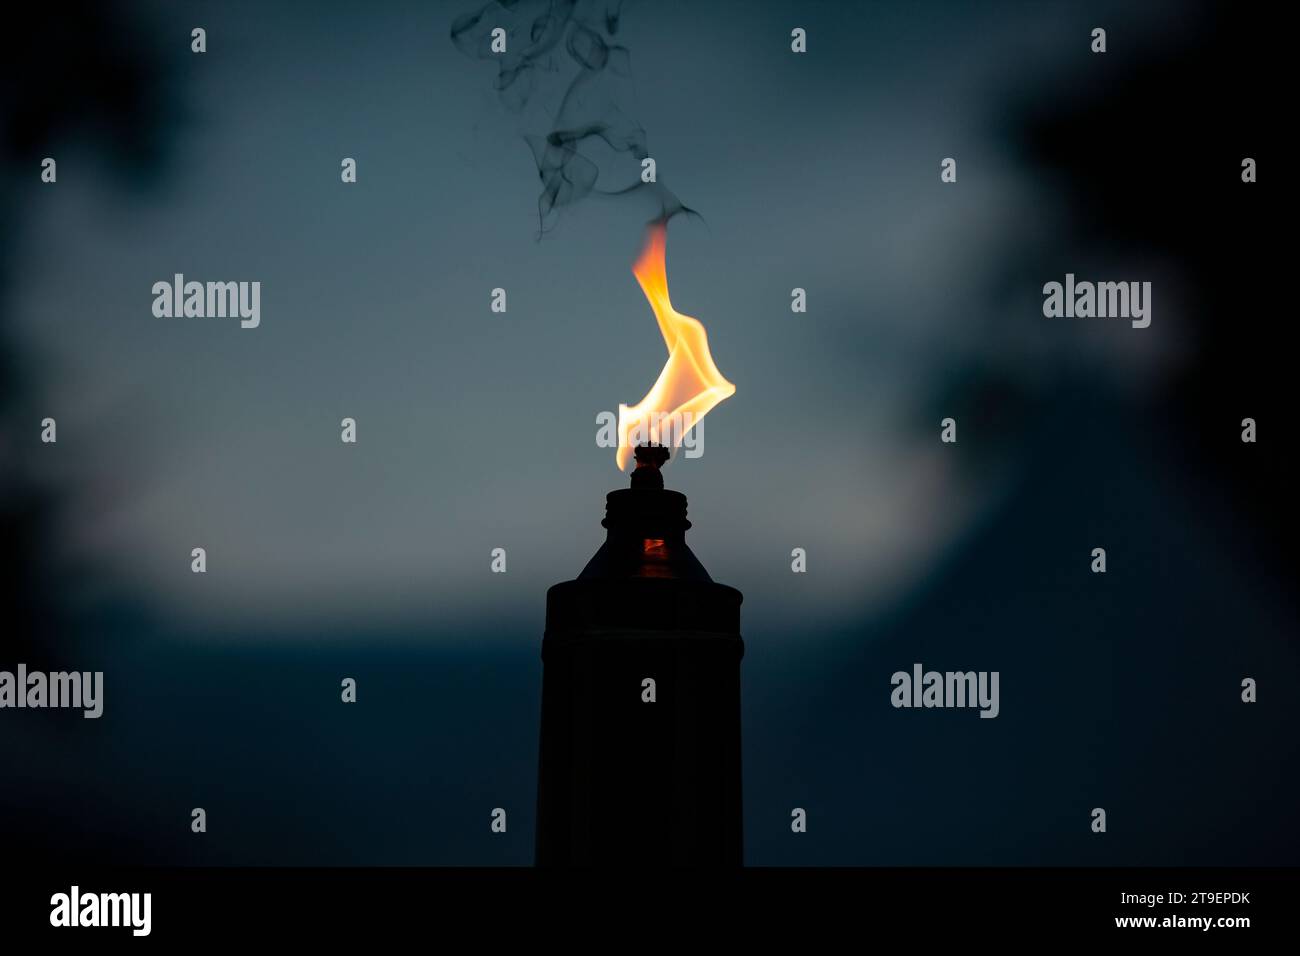 Flamme brennt orange aus einer einzelnen Kerzenlampe während der Nacht Stockfoto